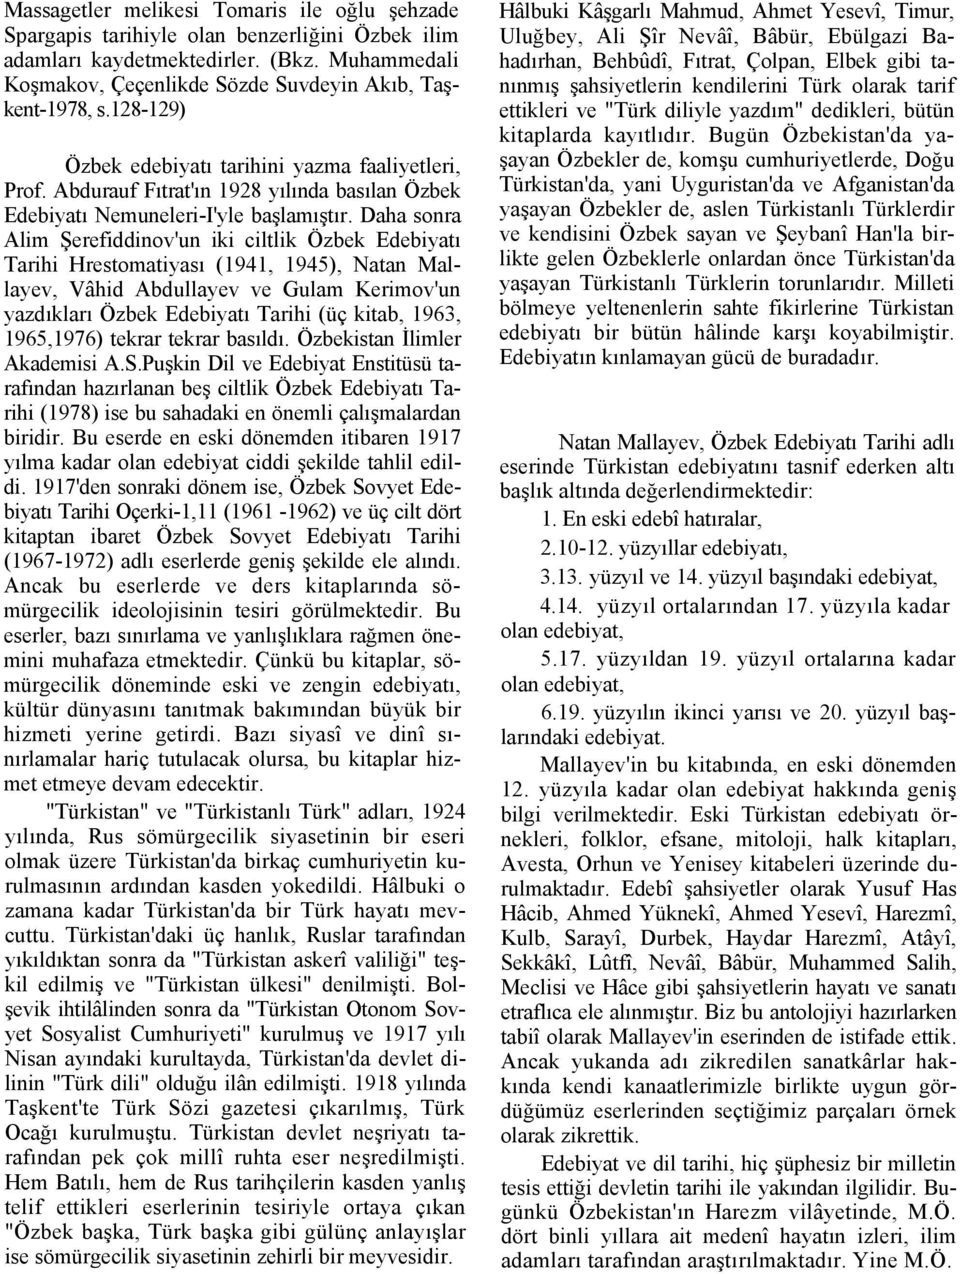 Daha sonra Alim Şerefiddinov'un iki ciltlik Özbek Edebiyatı Tarihi Hrestomatiyası (1941, 1945), Natan Mallayev, Vâhid Abdullayev ve Gulam Kerimov'un yazdıkları Özbek Edebiyatı Tarihi (üç kitab, 1963,